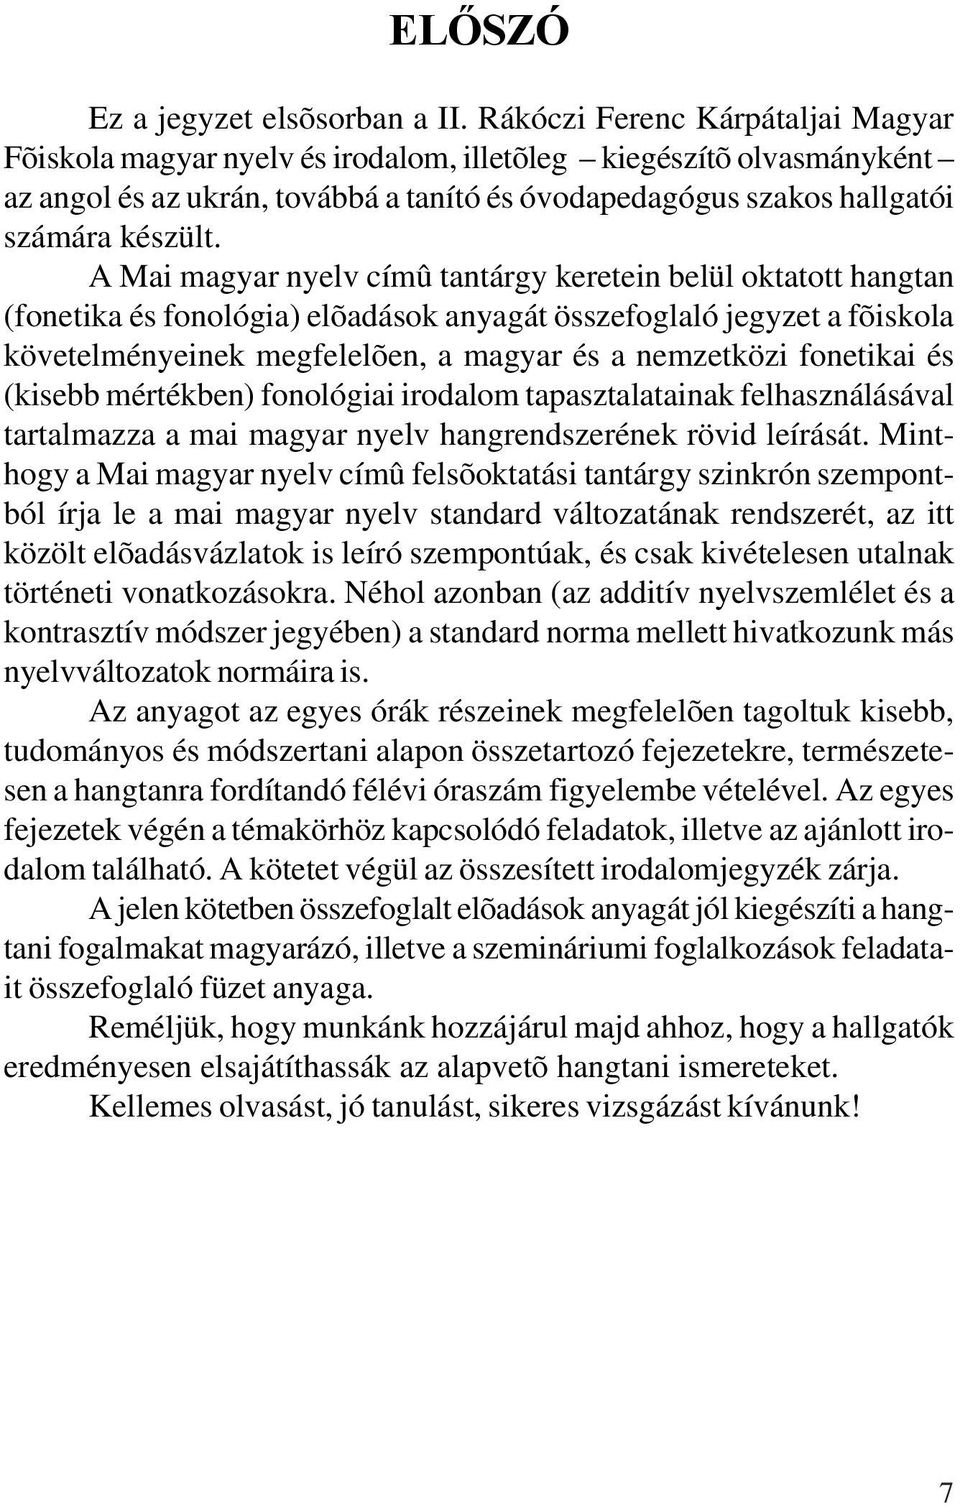 A Mai magyar nyelv címû tantárgy keretein belül oktatott hangtan (fonetika és fonológia) elõadások anyagát összefoglaló jegyzet a fõiskola követelményeinek megfelelõen, a magyar és a nemzetközi